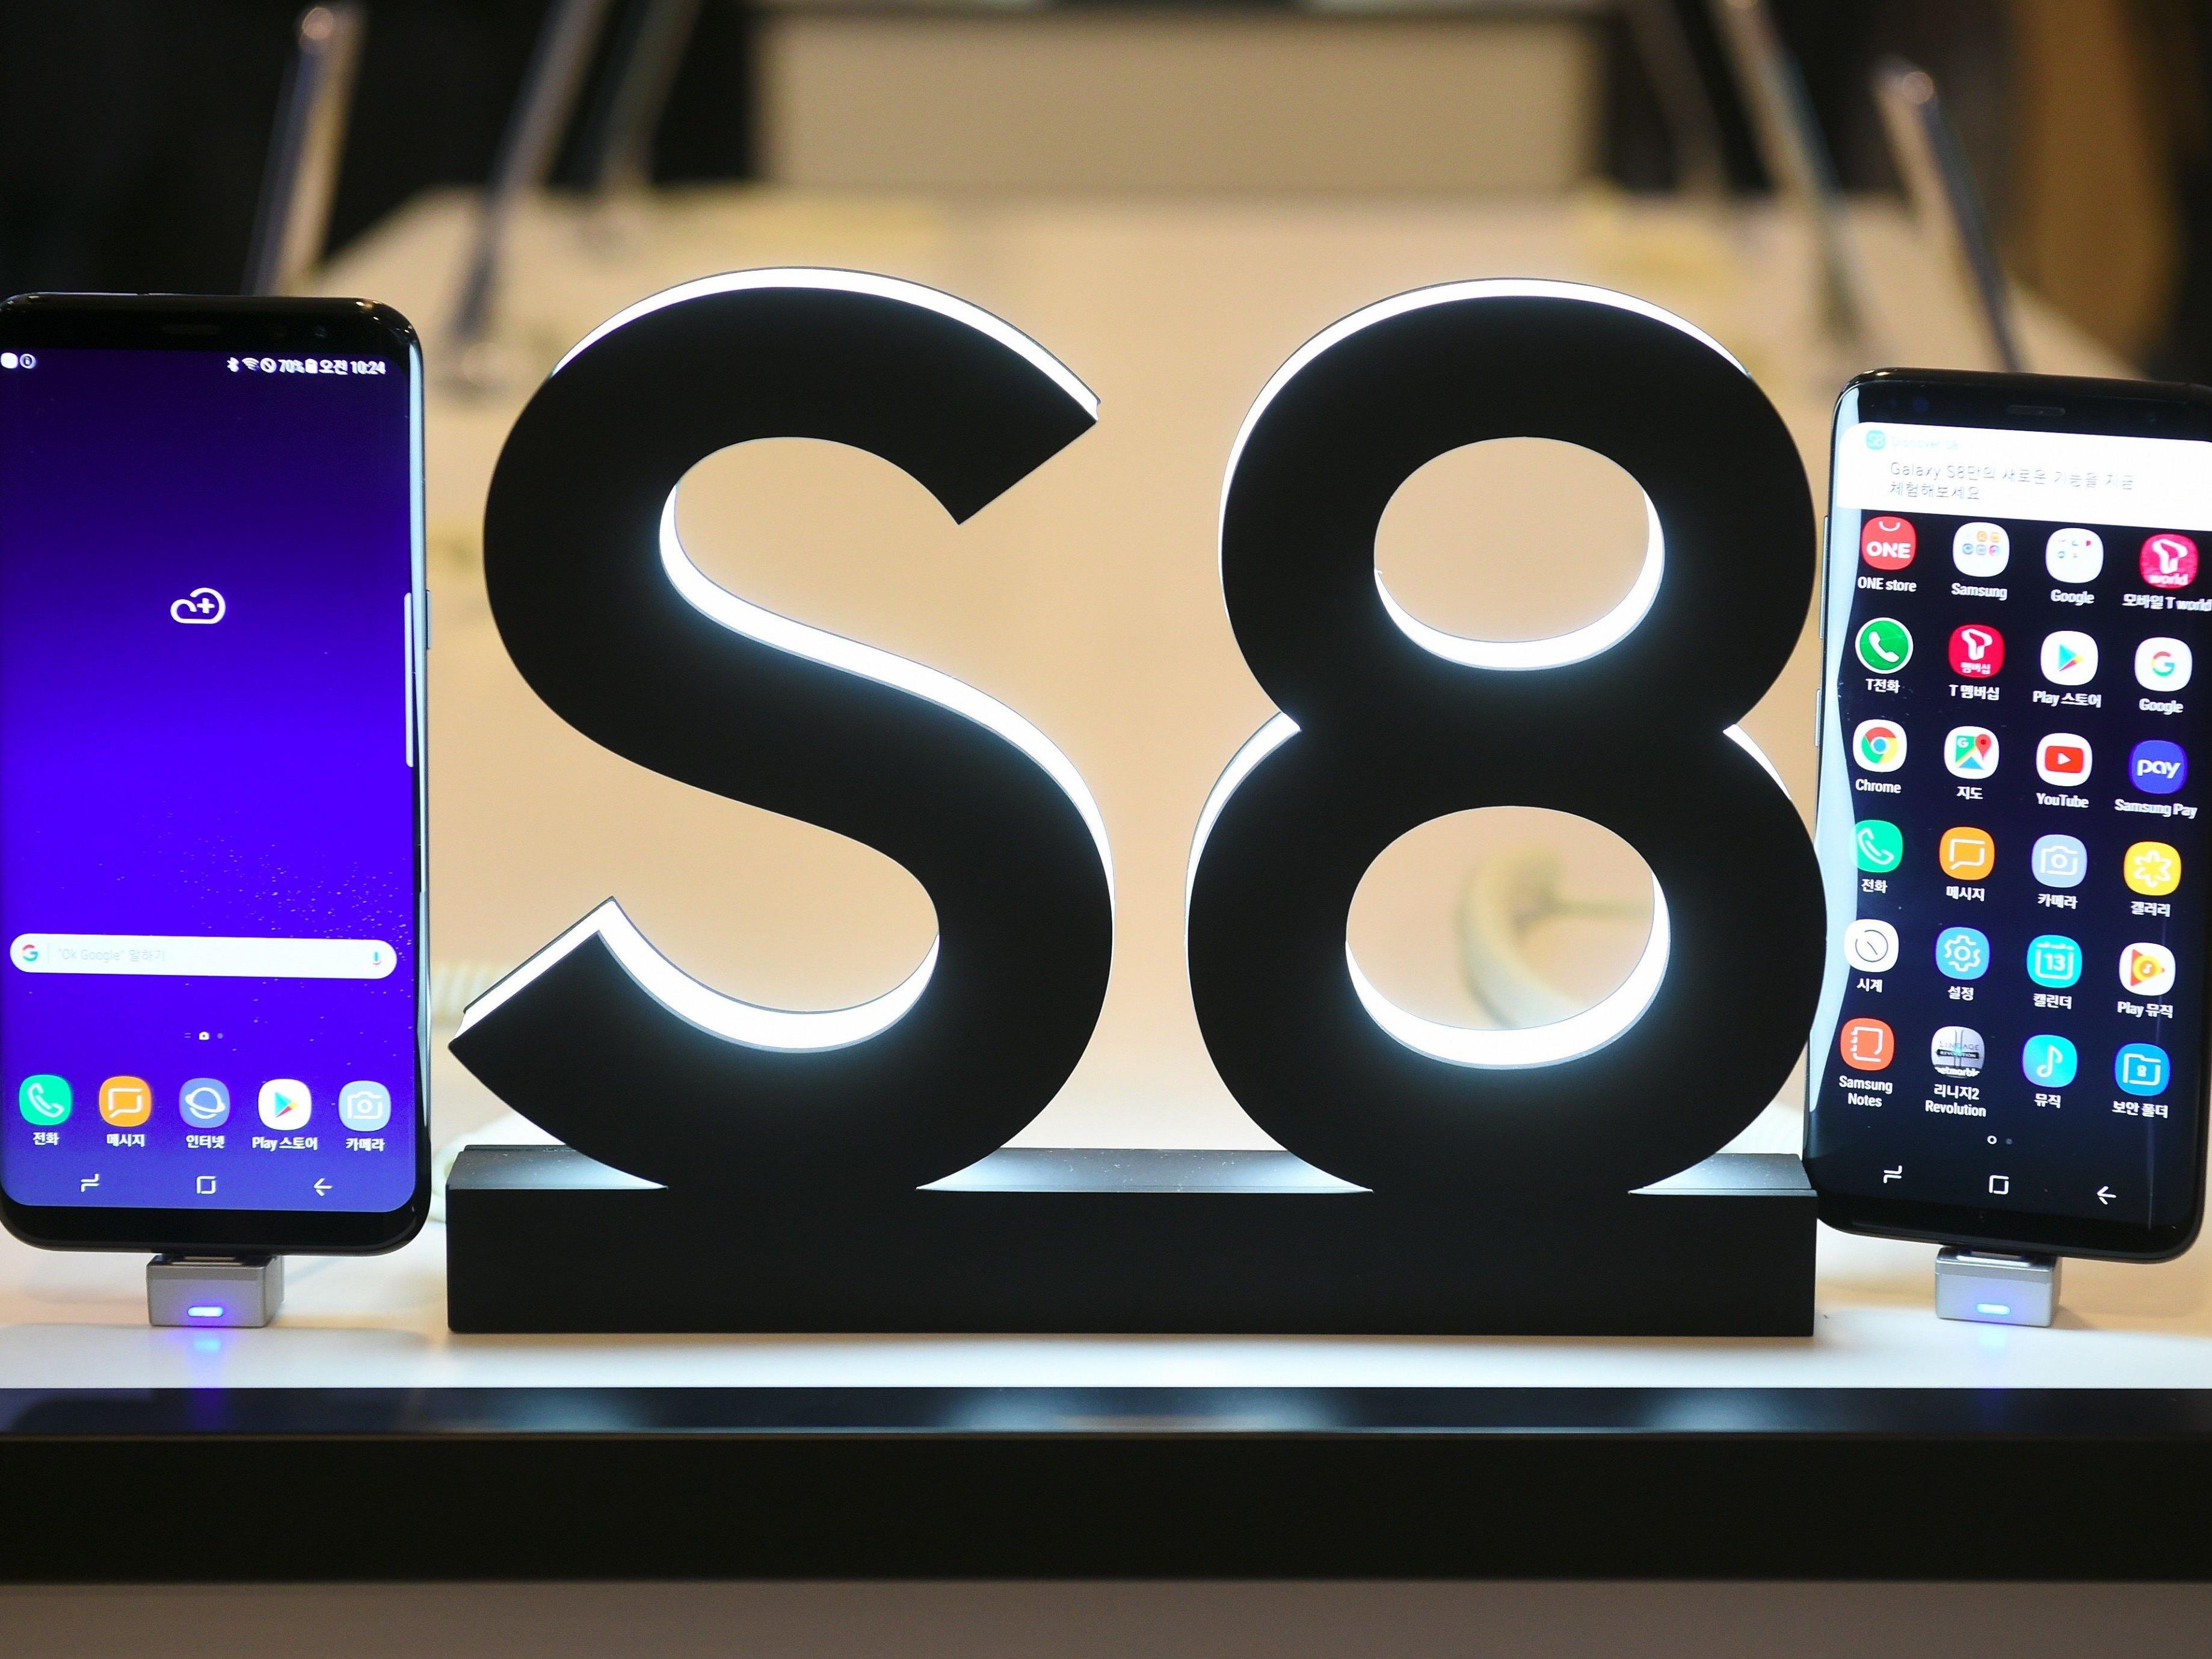 Nach dem Fiasko um das Galaxy S7 soll das neue Galaxy S8 Samsung wieder auf die Erfolgsspur führen.